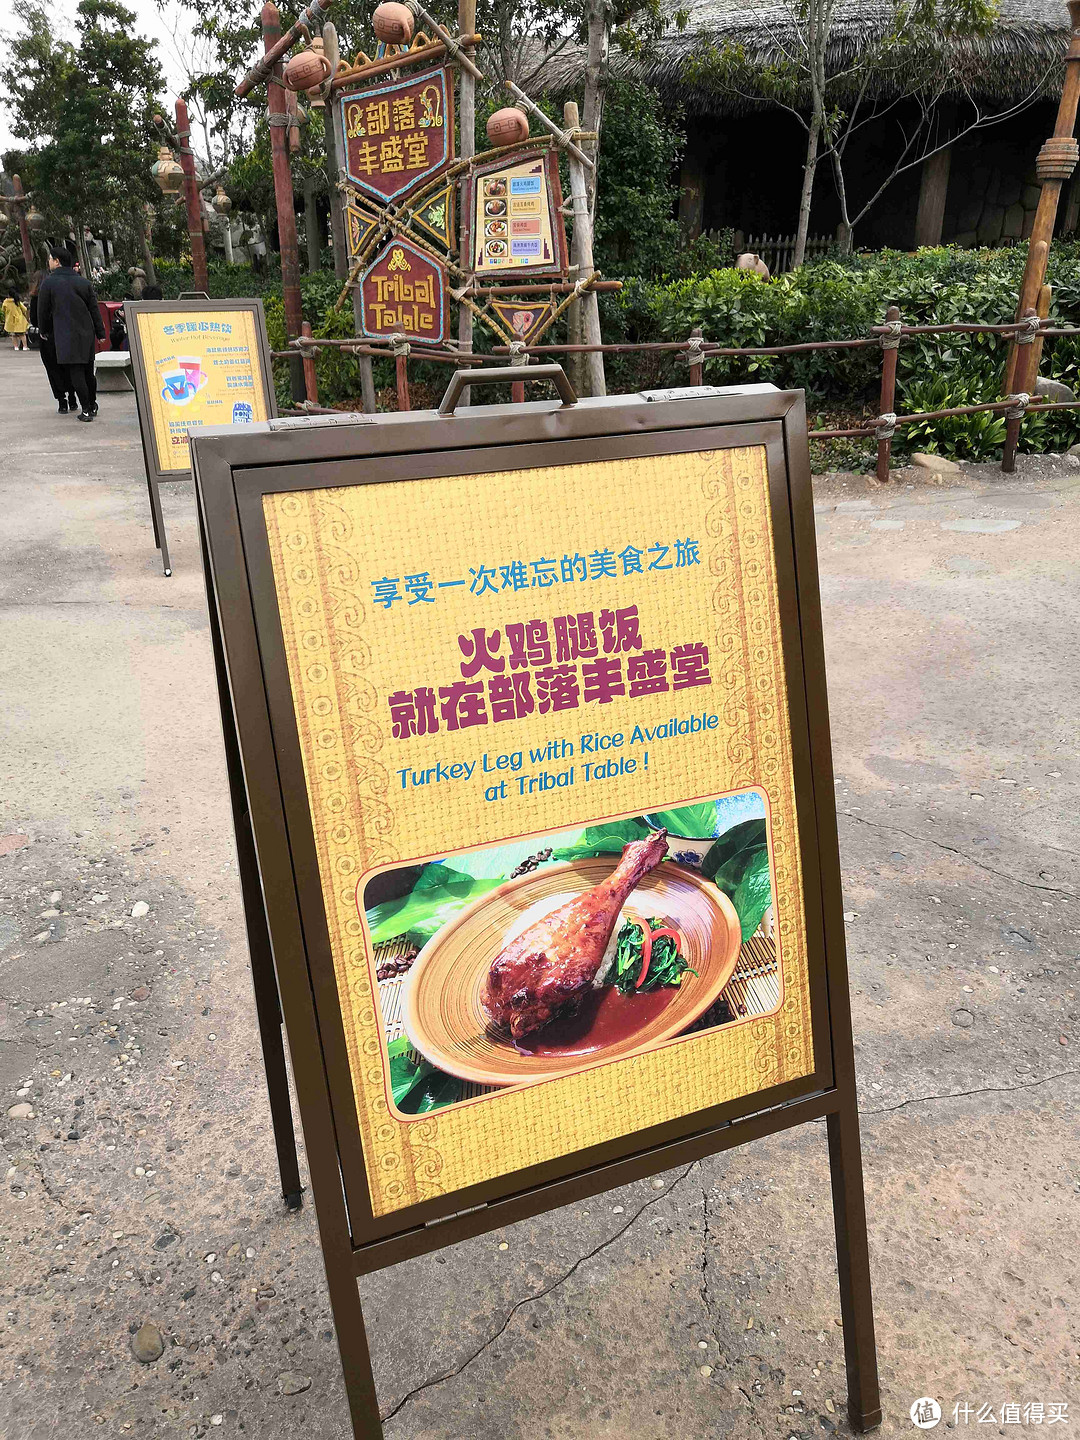 在上海迪士尼乐园里除了火鸡腿还能吃什么？（主食篇）